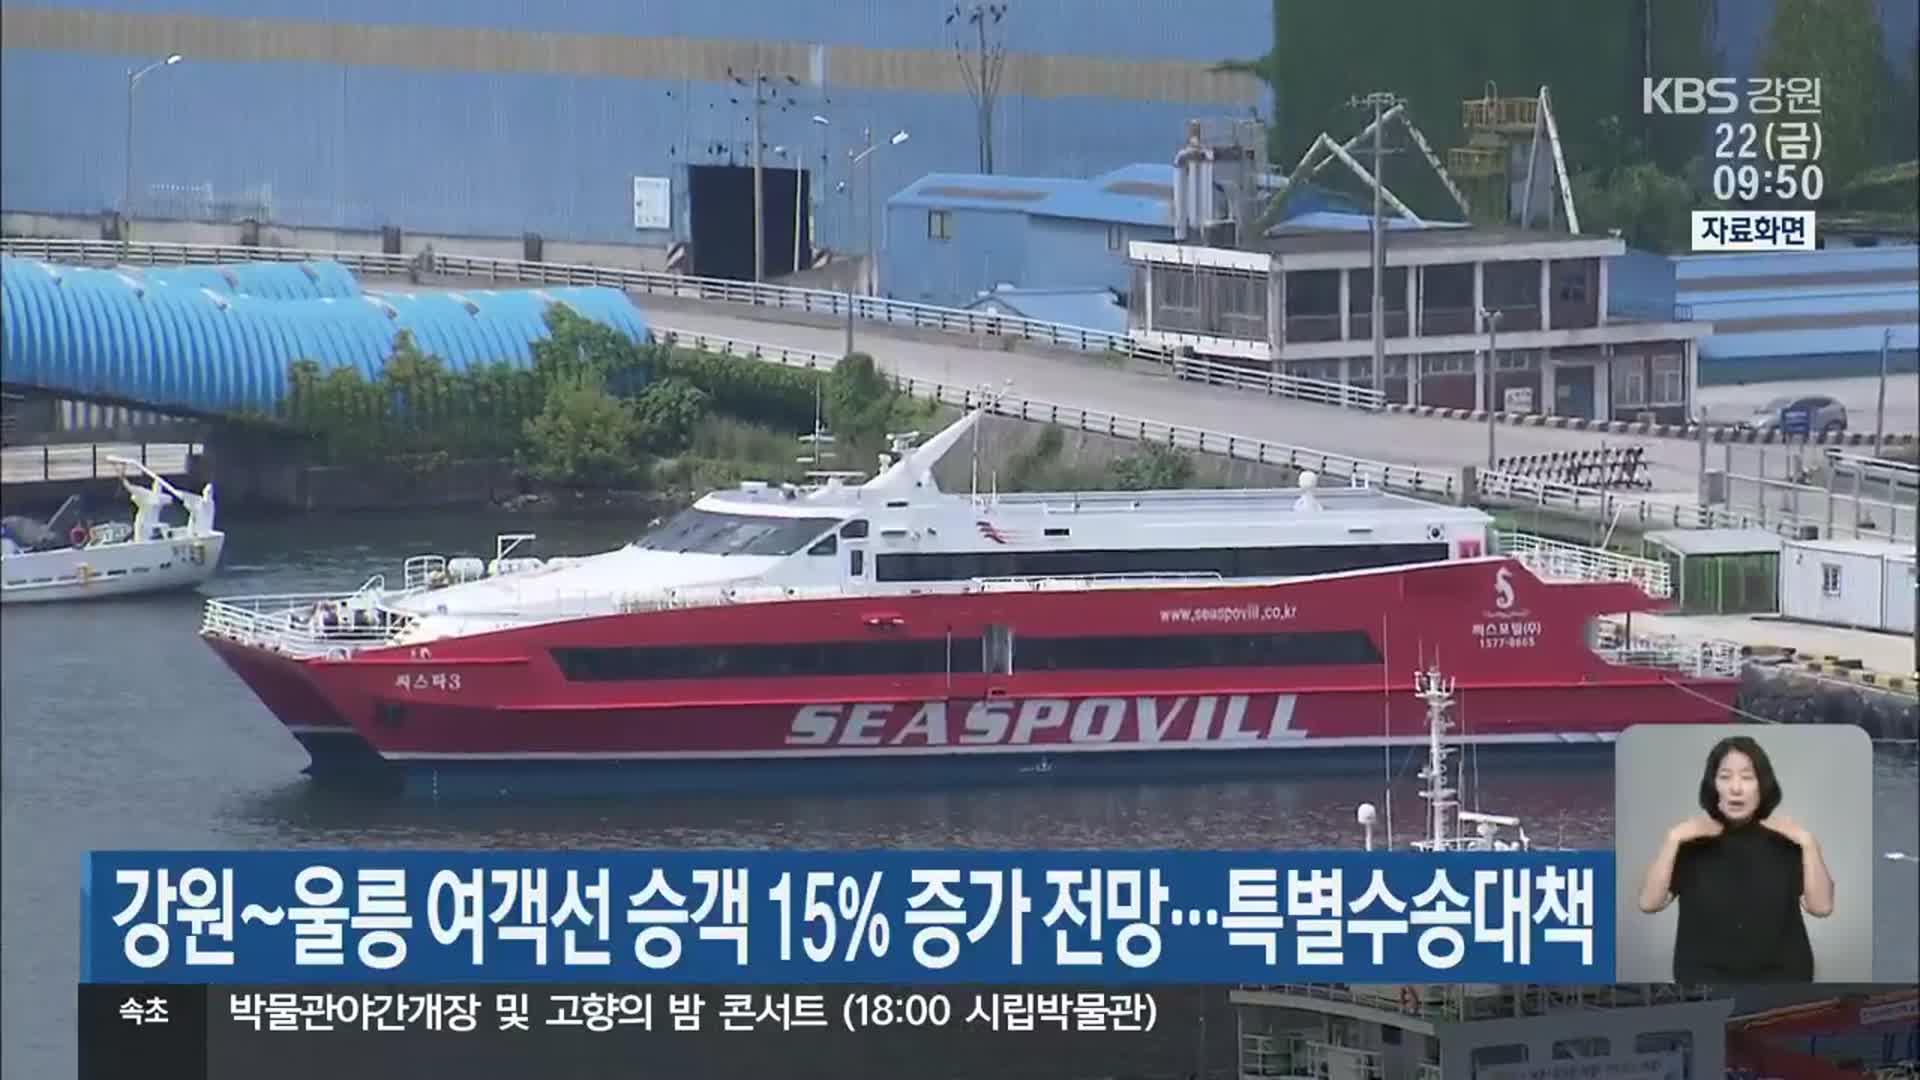 강원~울릉 여객선 승객 15% 증가 전망…특별수송대책